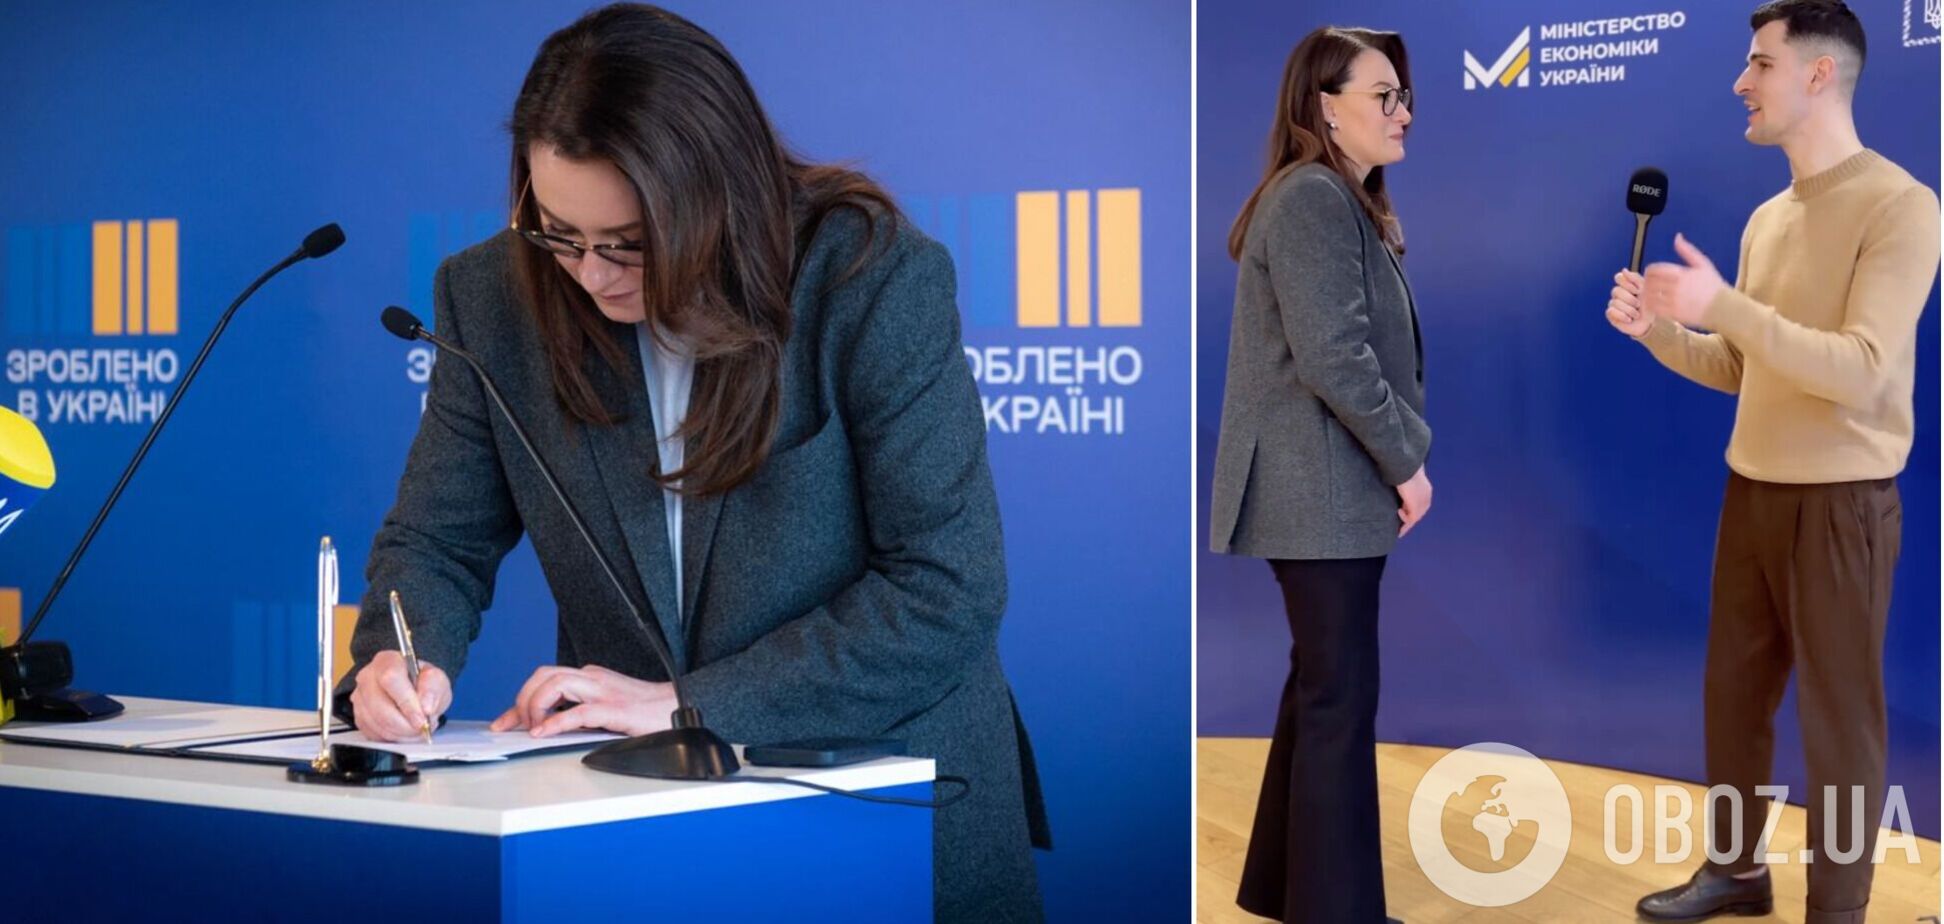 Министр экономики Юлия Свириденко с зарплатой около 75 тыс. грн в месяц назвала стоимость своего делового лука. Видео